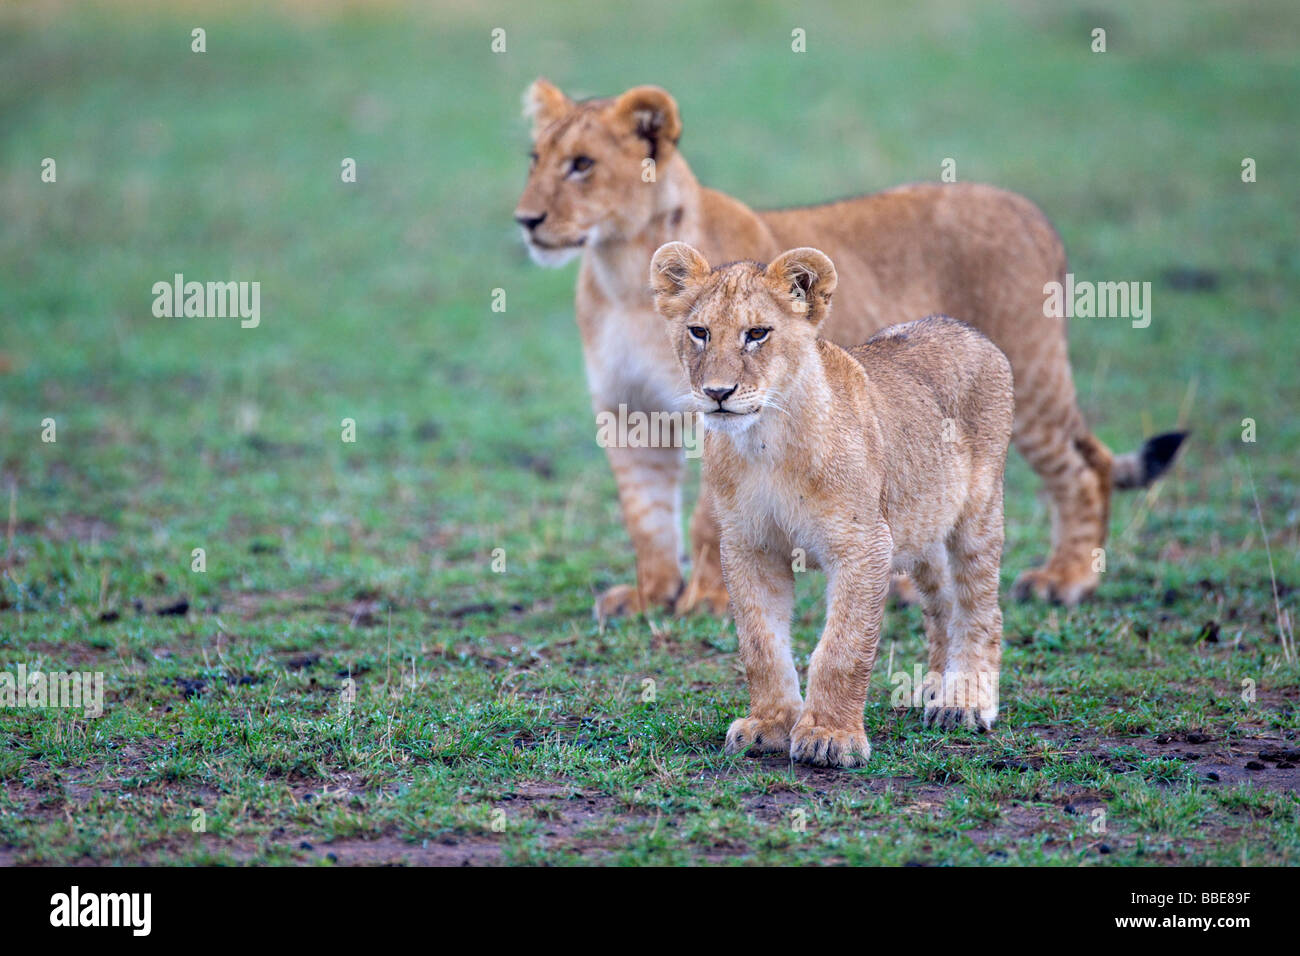 Lions (Panthera leo), cubs, Masai Mara National Reserve, Kenya, East Africa Stock Photo